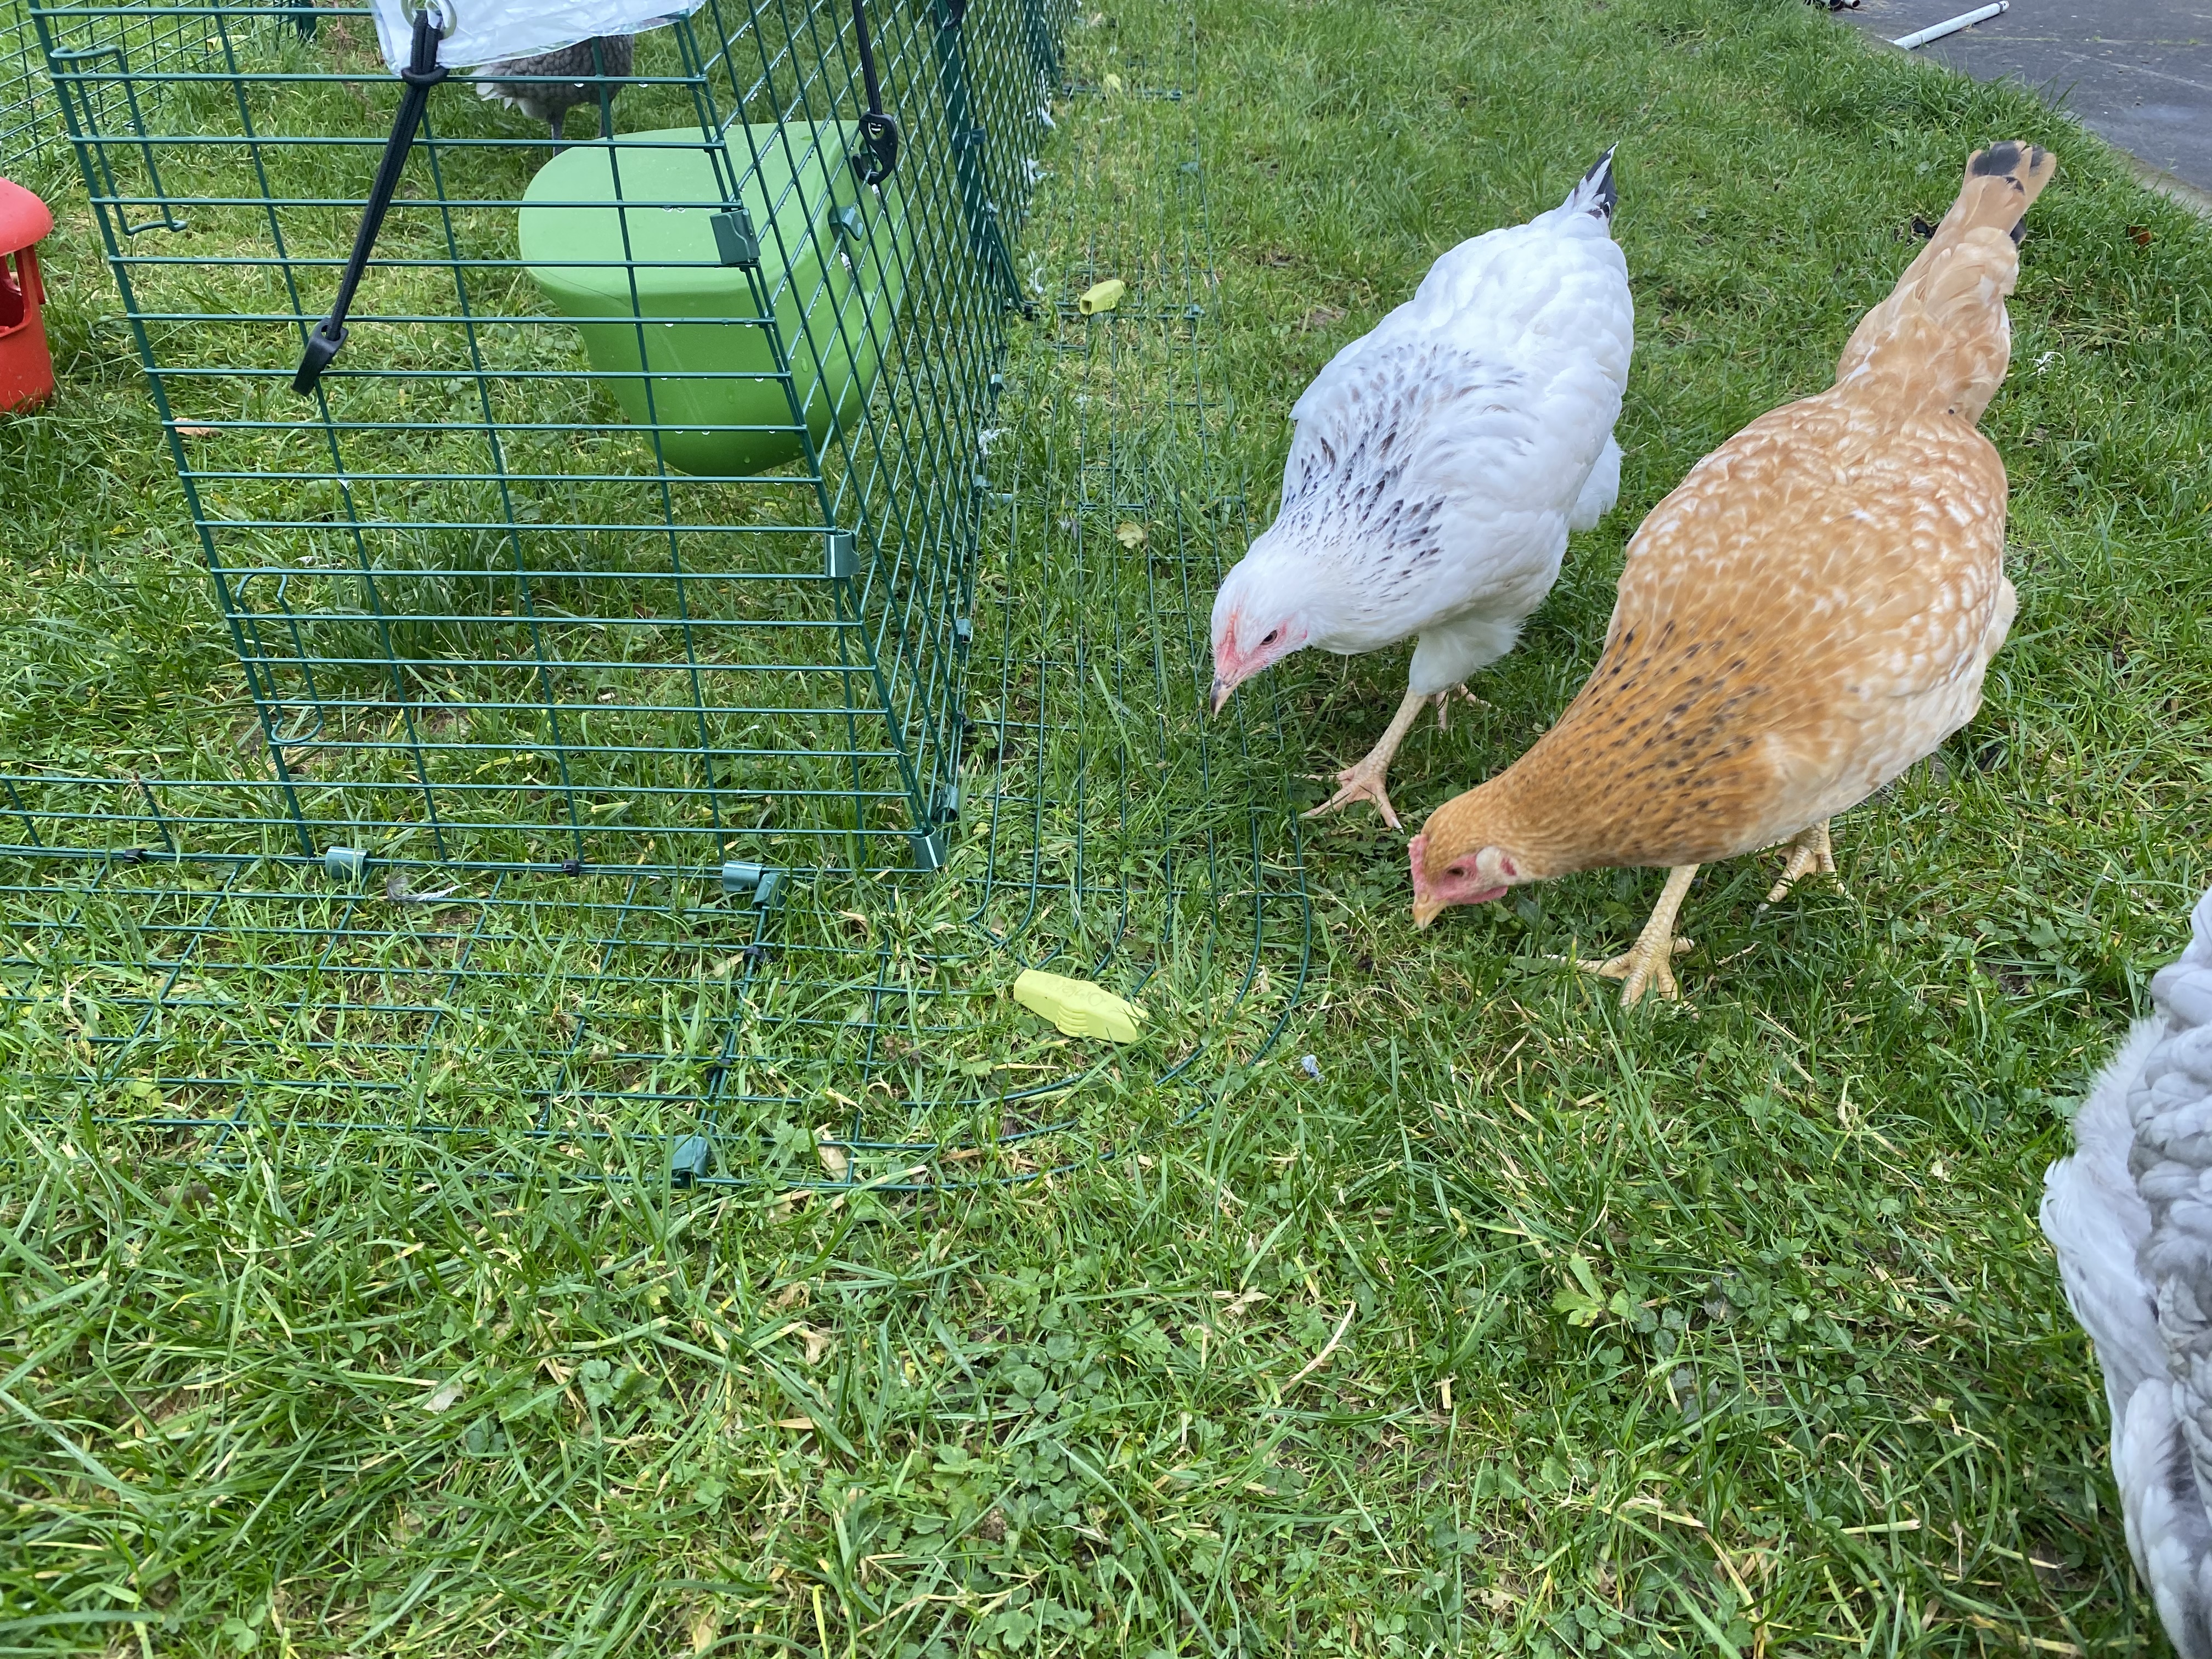 Pollos inspeccionando los anclajes al suelo 